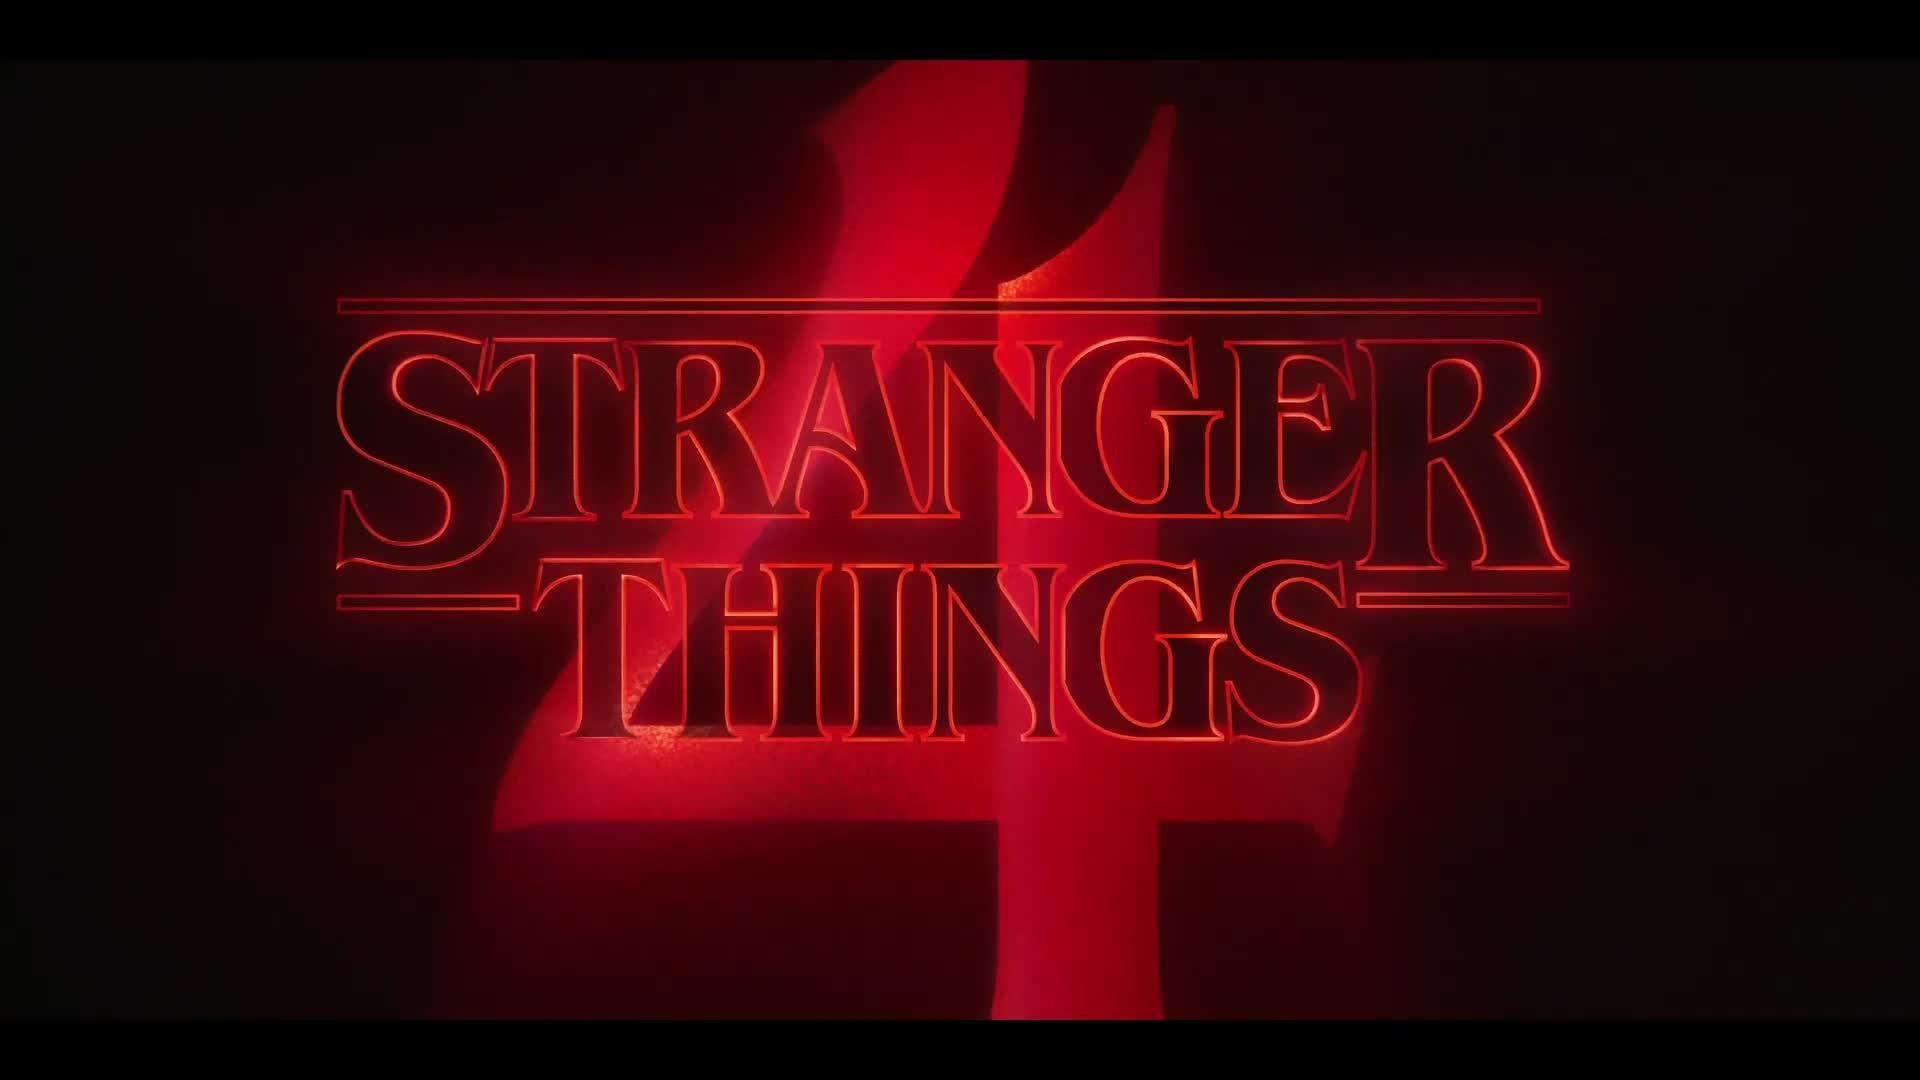 Stranger Things 4' Trailer Volume 2: Netflix releases the teaser